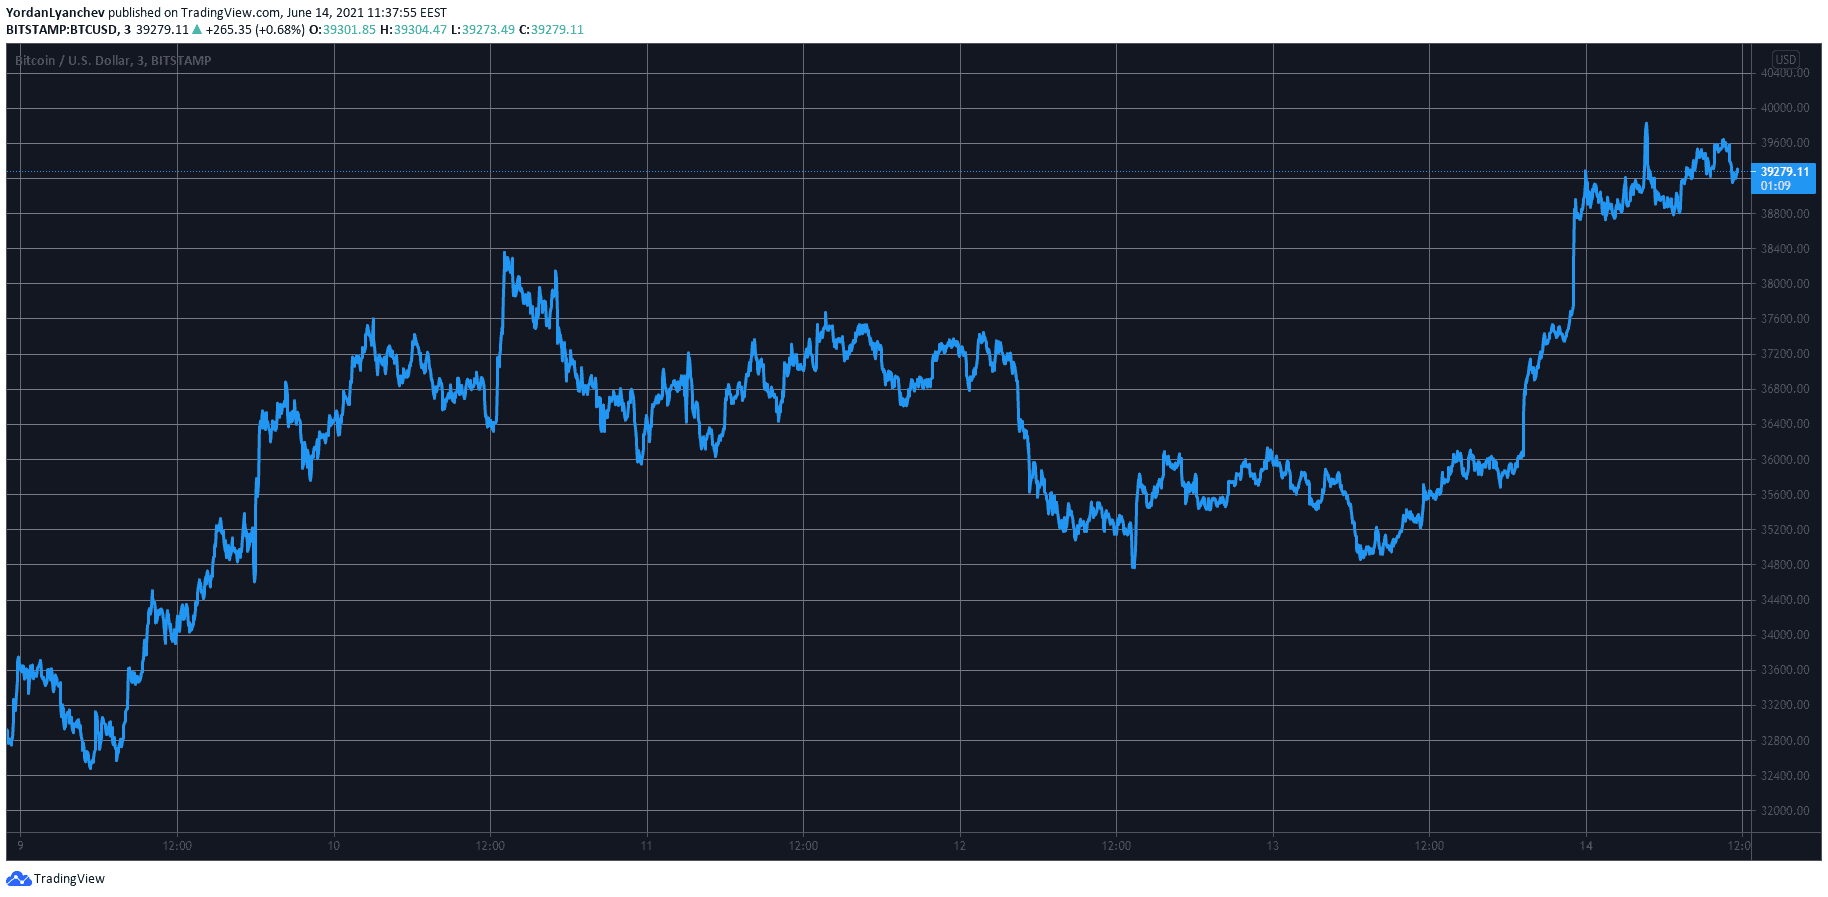 Bitcoin Spikes $4K Following Elon Musk’s Tweet, BTC Dominance Rising (Market Watch)